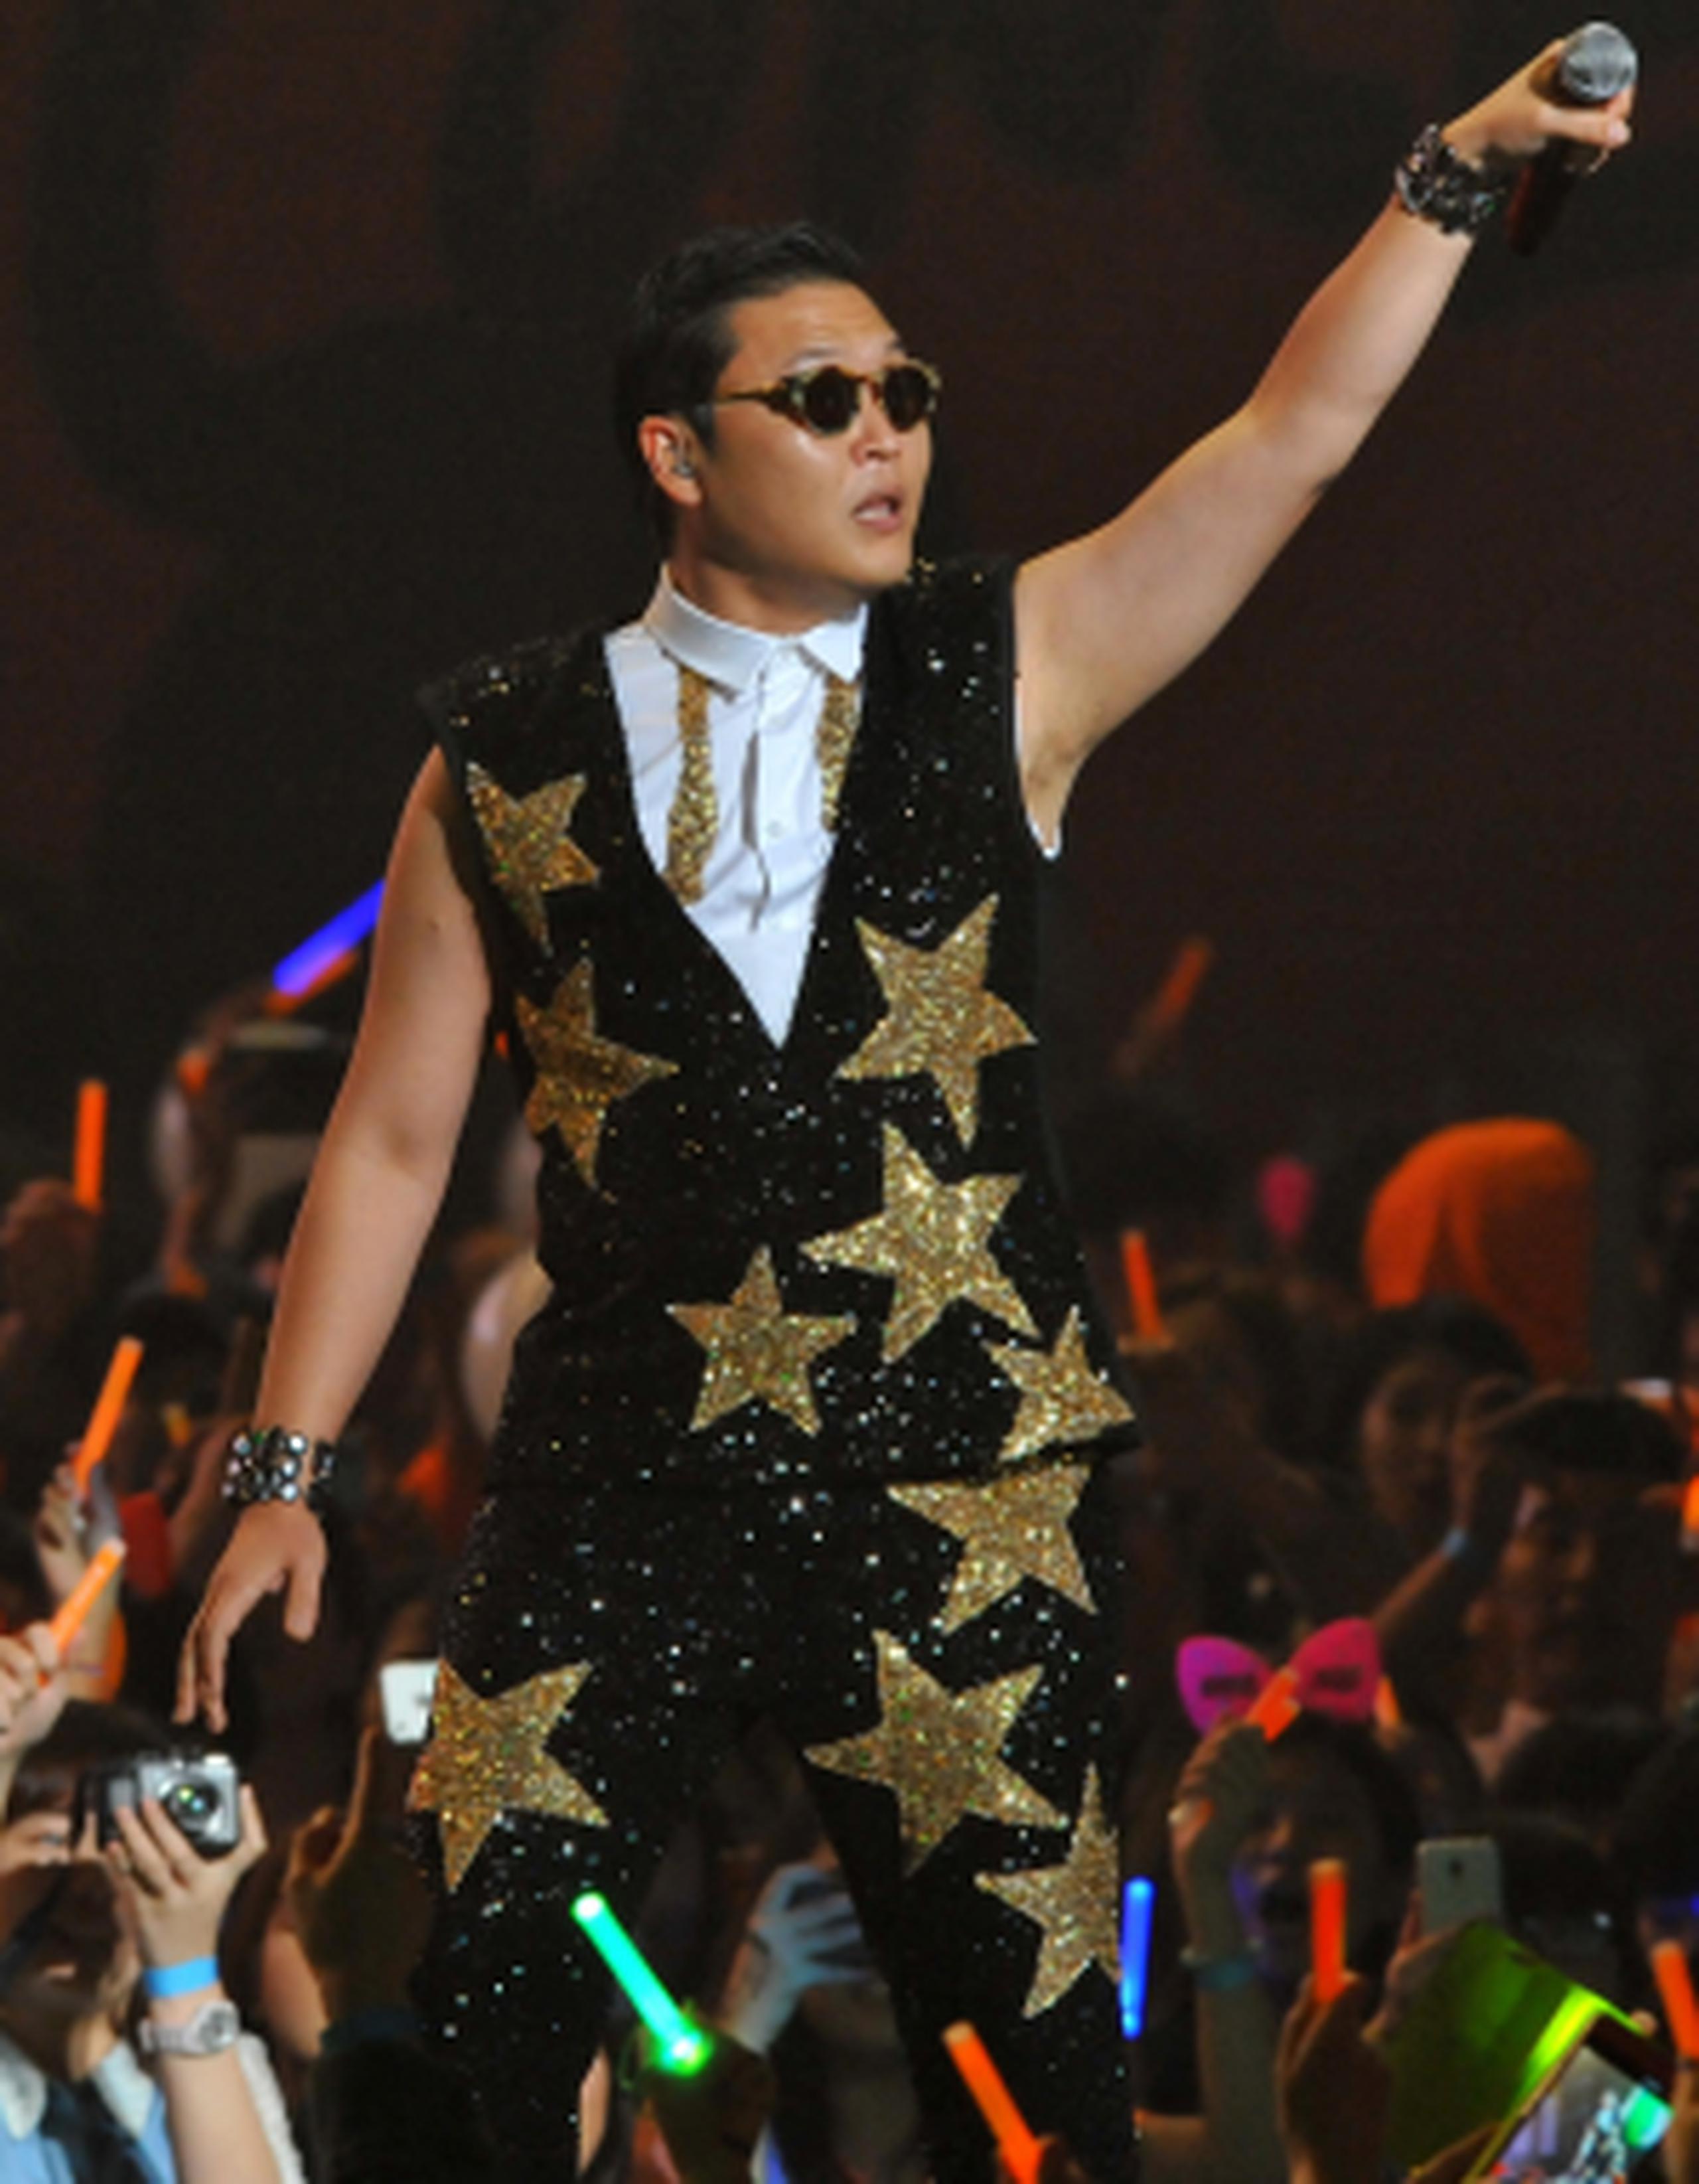 El manager de Psy, dice que el video de "Gentleman" se develará el domingo en un concierto y que luego se subirá a YouTube. (AFP)